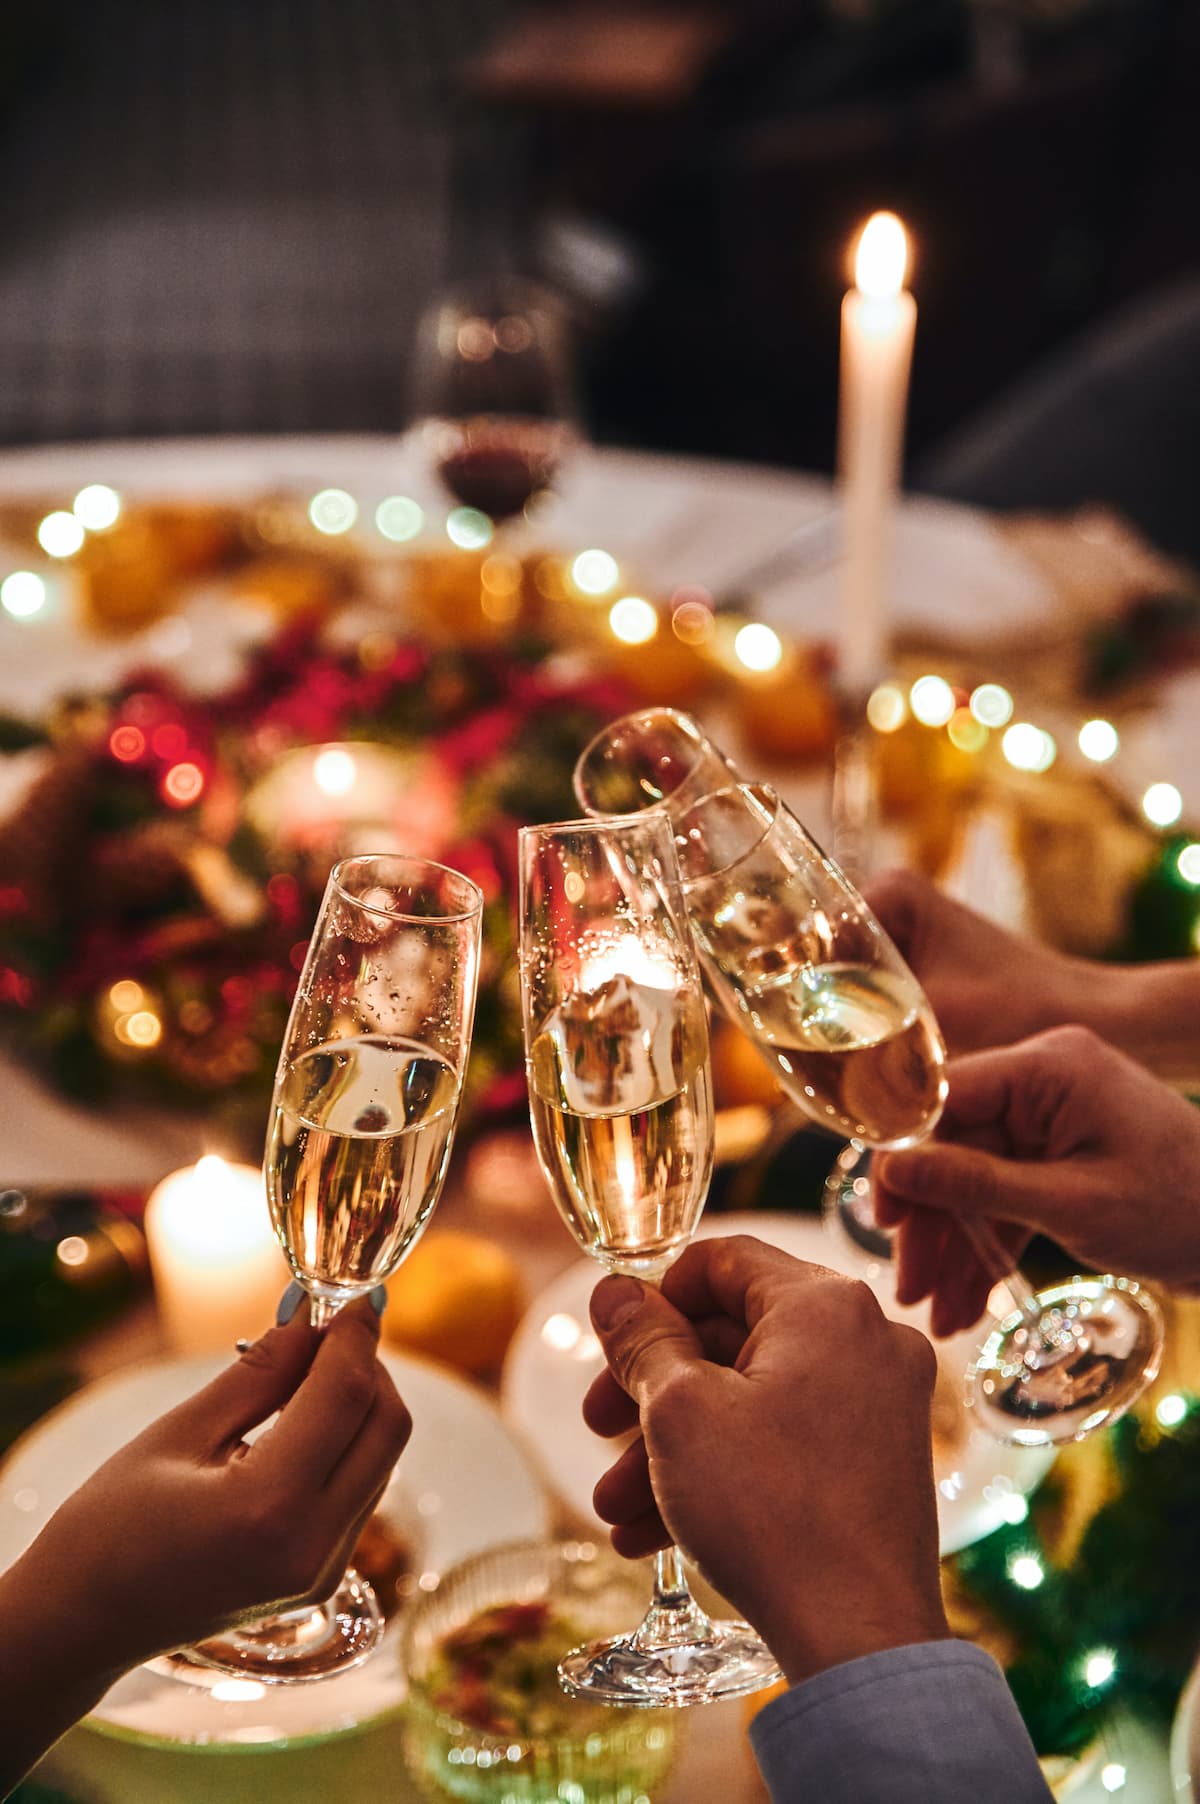 Pessoas comemorando o ano novo tomando champagne